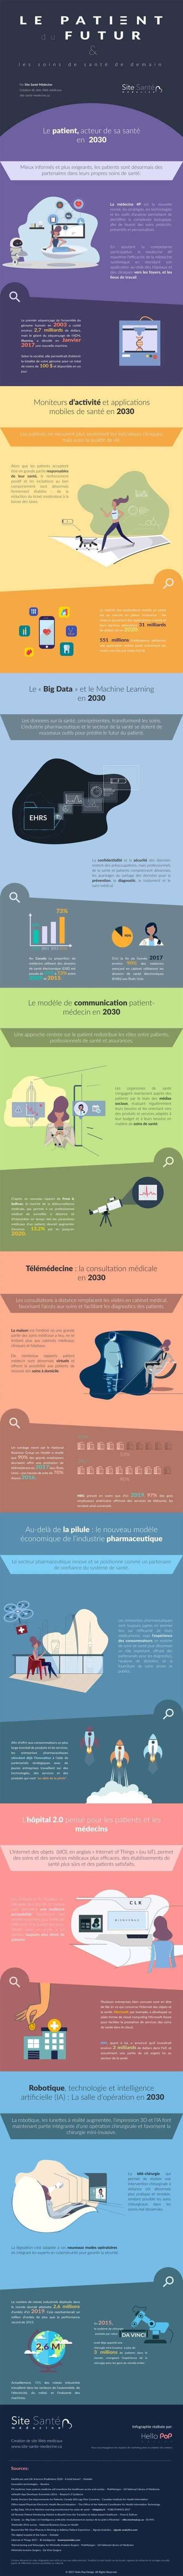 Infographie : le patient du futur et les soins de santé de demain | Digital Pharma | Scoop.it